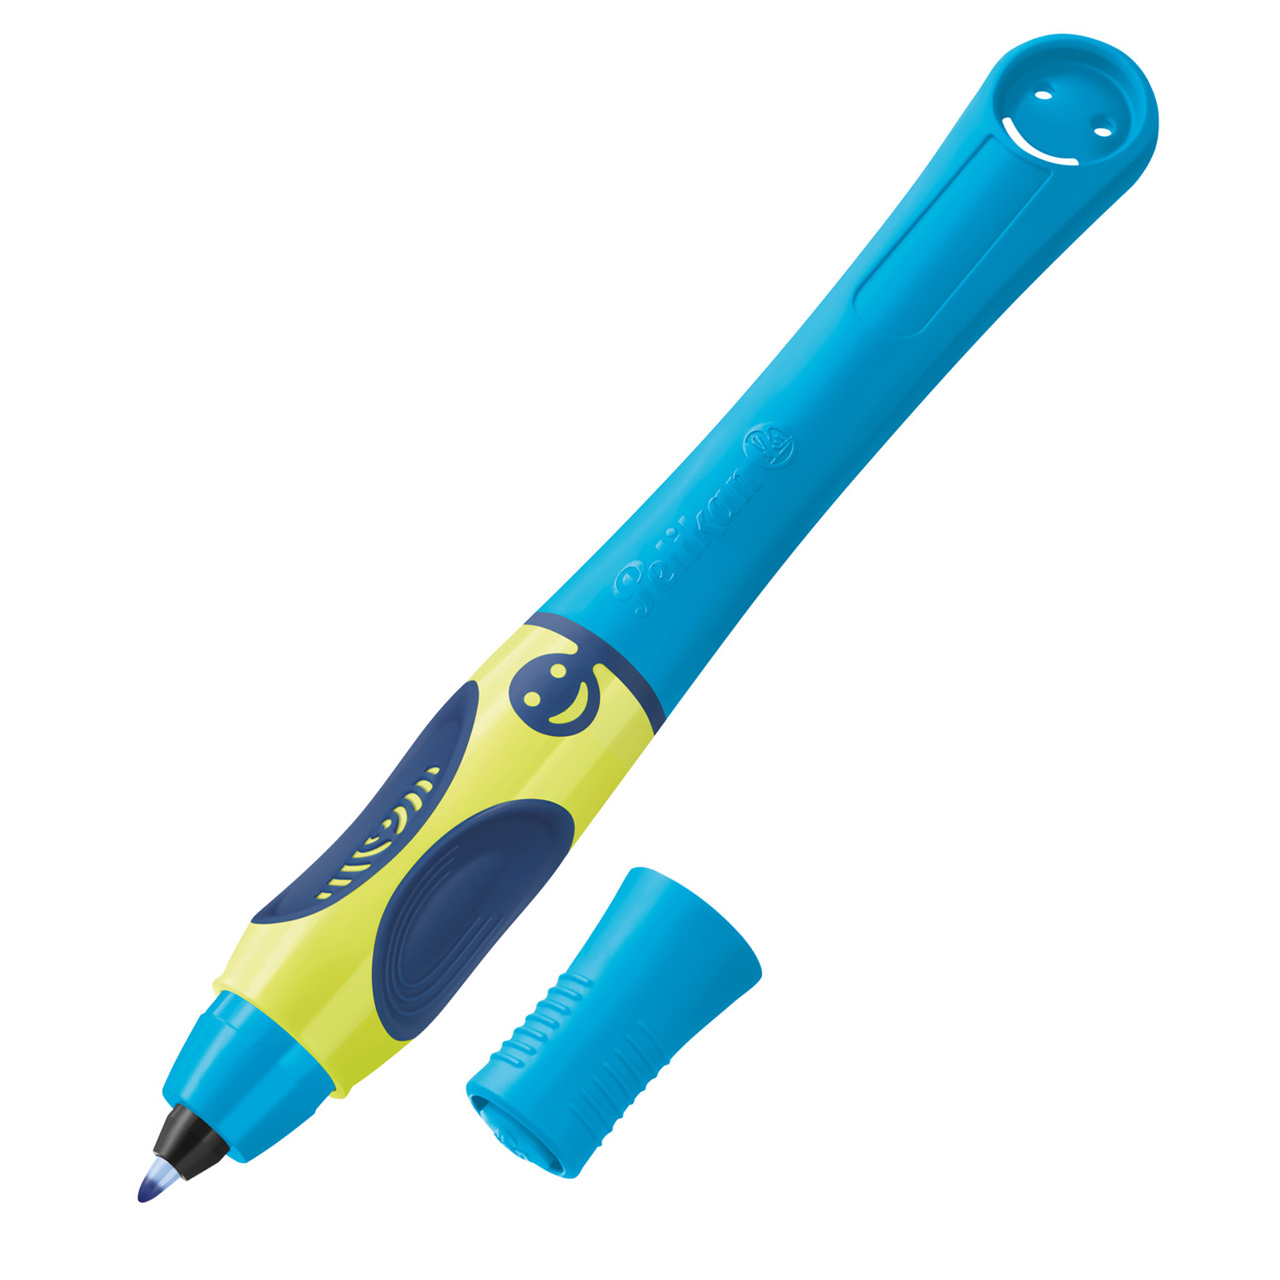 Pelikan-Griffix-Tintenroller-Rechtshaender-Neon-Fresh-Blue-820462-Schreiblern-Stift-lafueliki